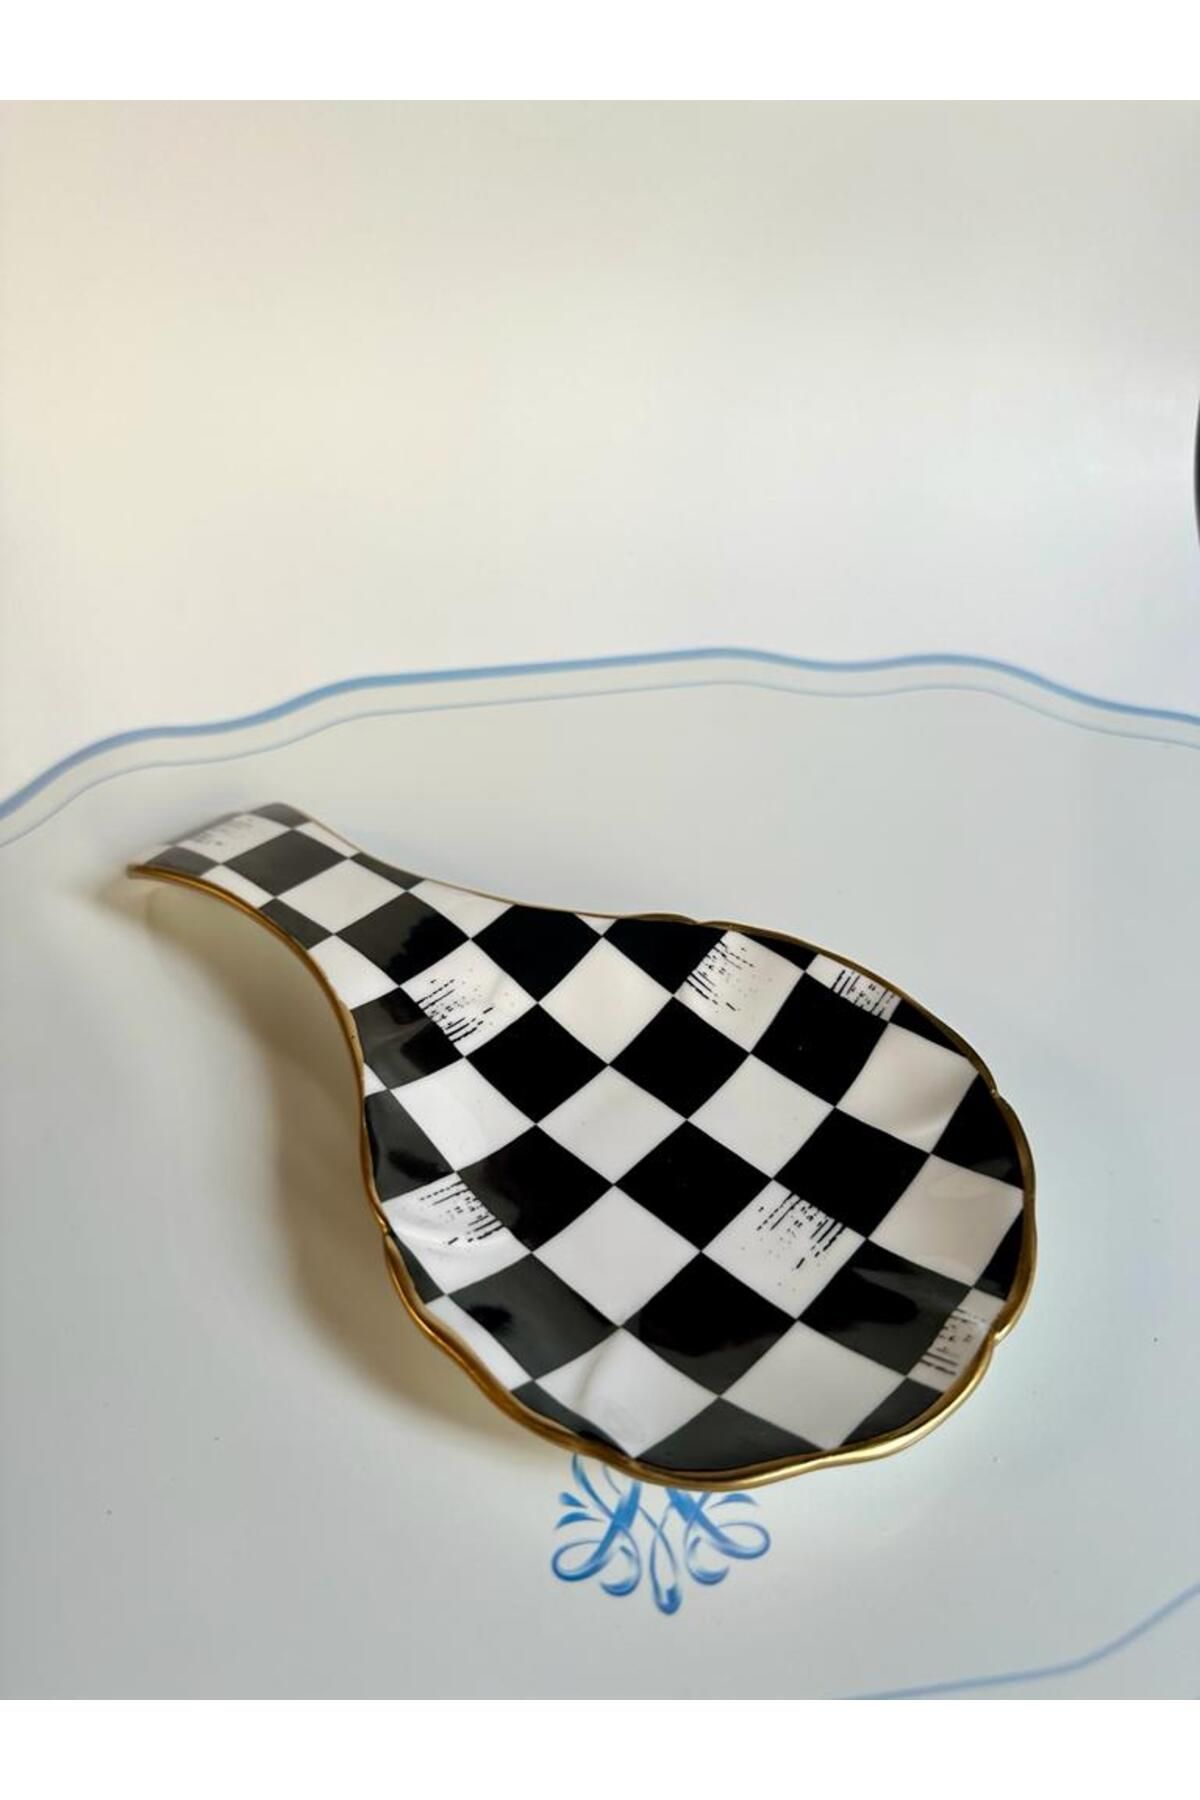 GÜRCÜGLASS Damalı model Porselen Tezgah Üstü Kepçe Ve Kaşık Altlığı 24x12 cm